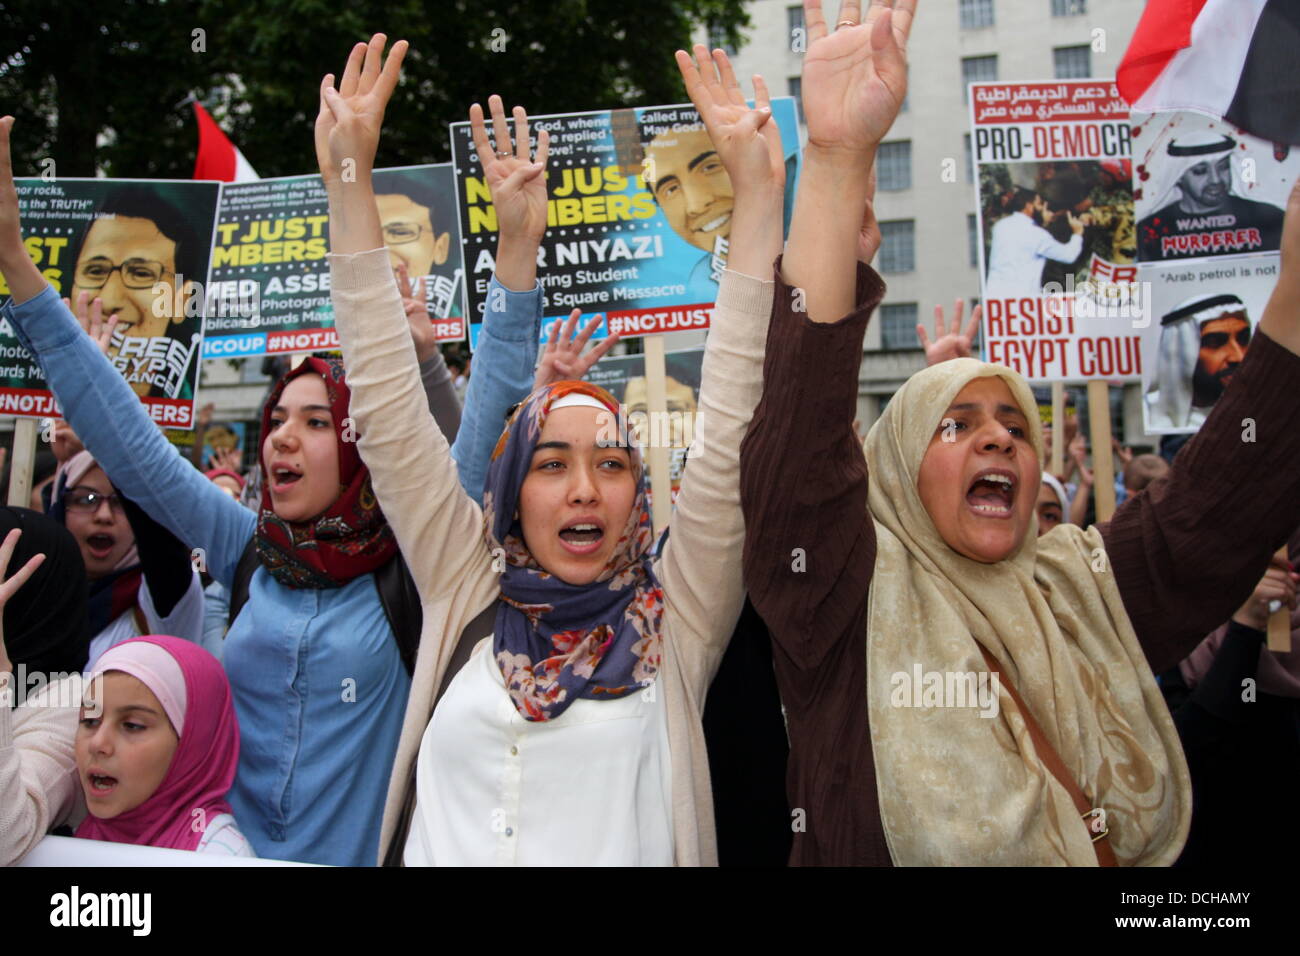 18 agosto 2013, Whitehall, Londra. Forum egiziano protesta degli attivisti in favore del deposto Mohamed morsi Foto Stock